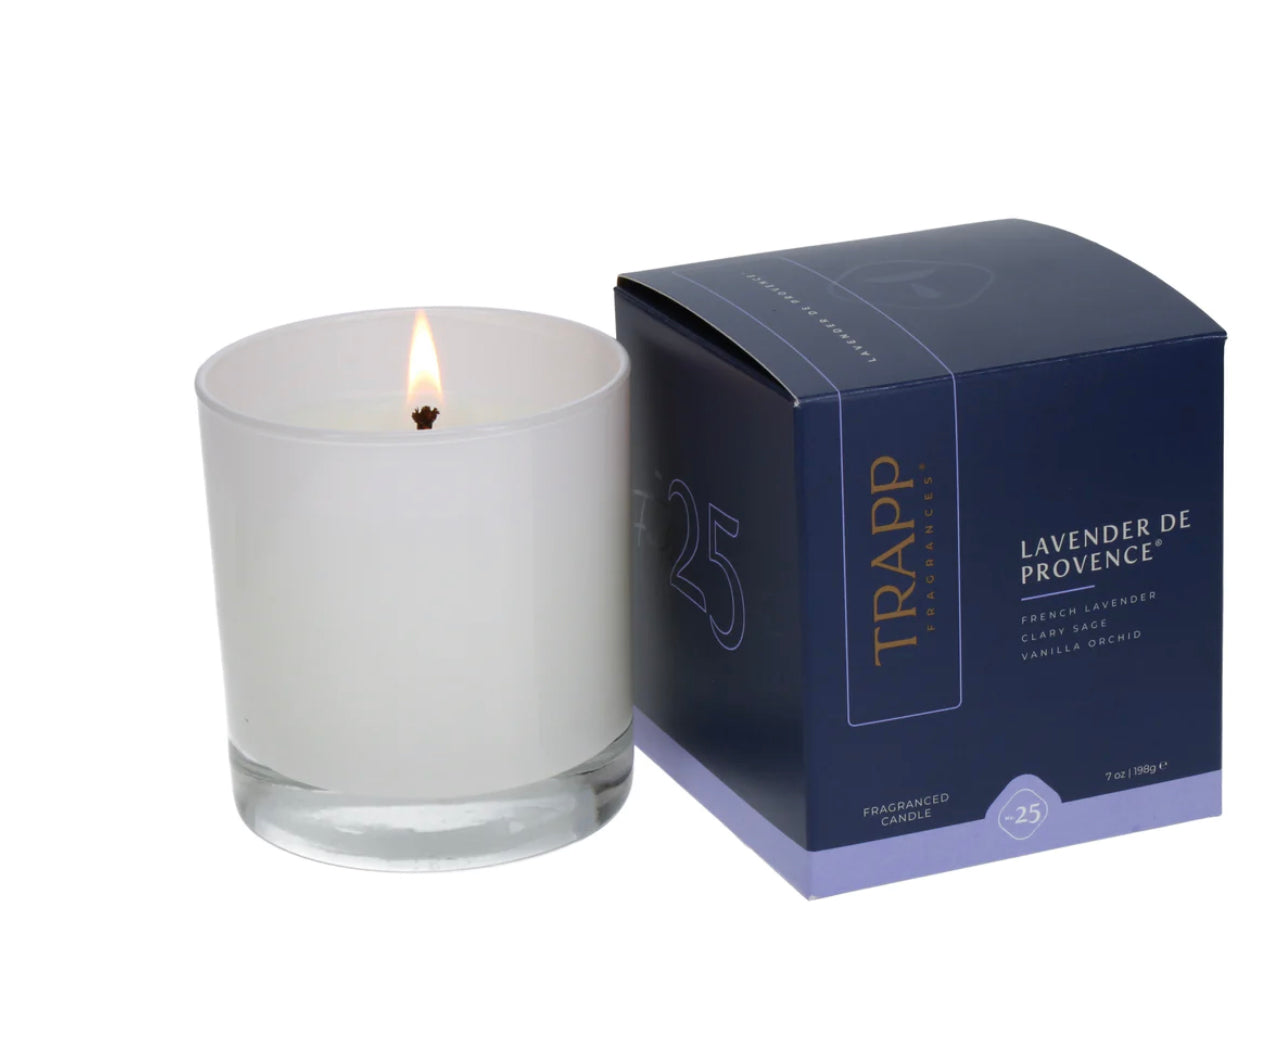 No. 25 Lavender de Provence® 7 oz. Candle in Signature Box